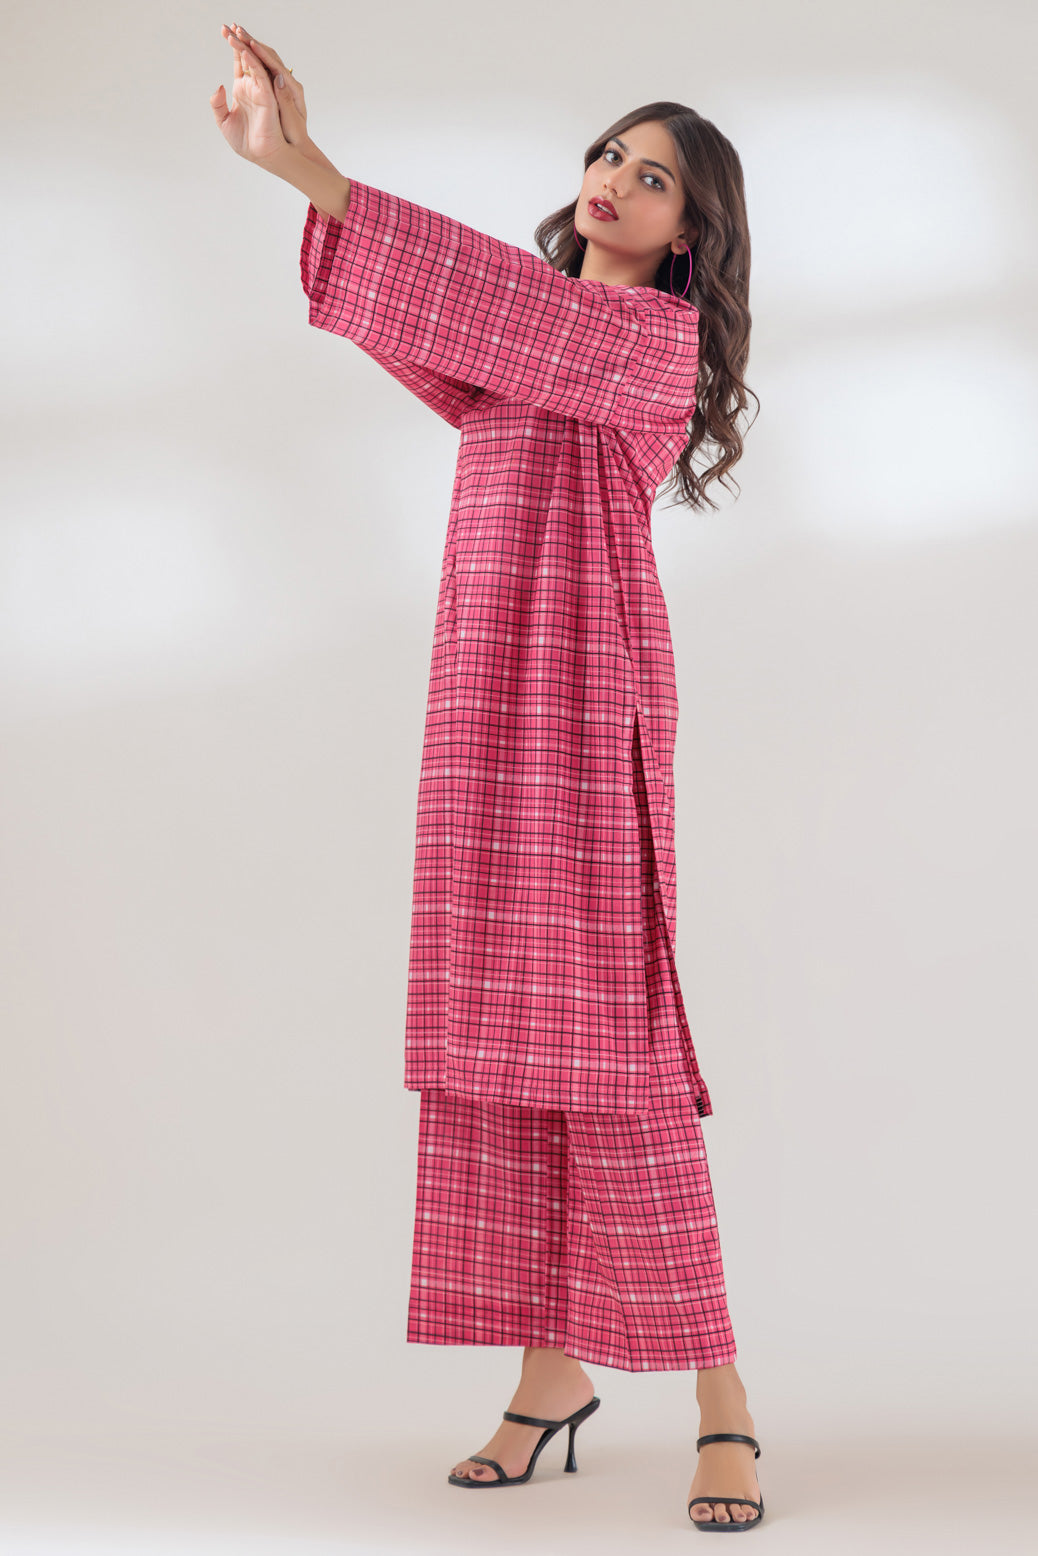 Cambric Pink 2 Piece Suit - Bonanza